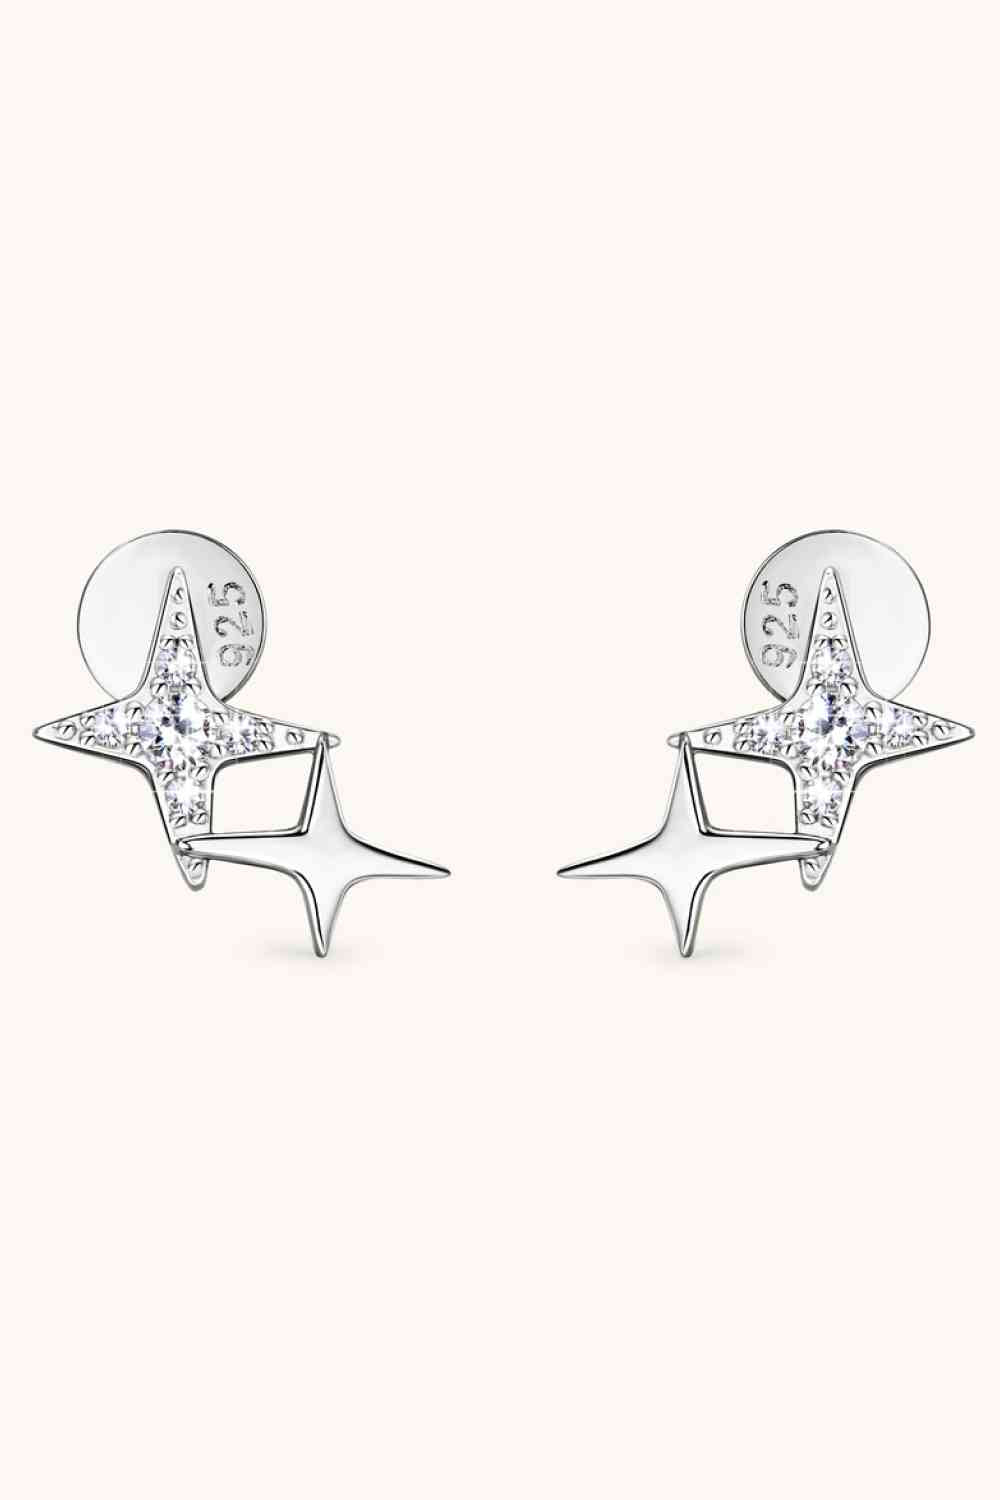 I Am a Star Moissanite 925 Sterling Silver Star Shape Earrings